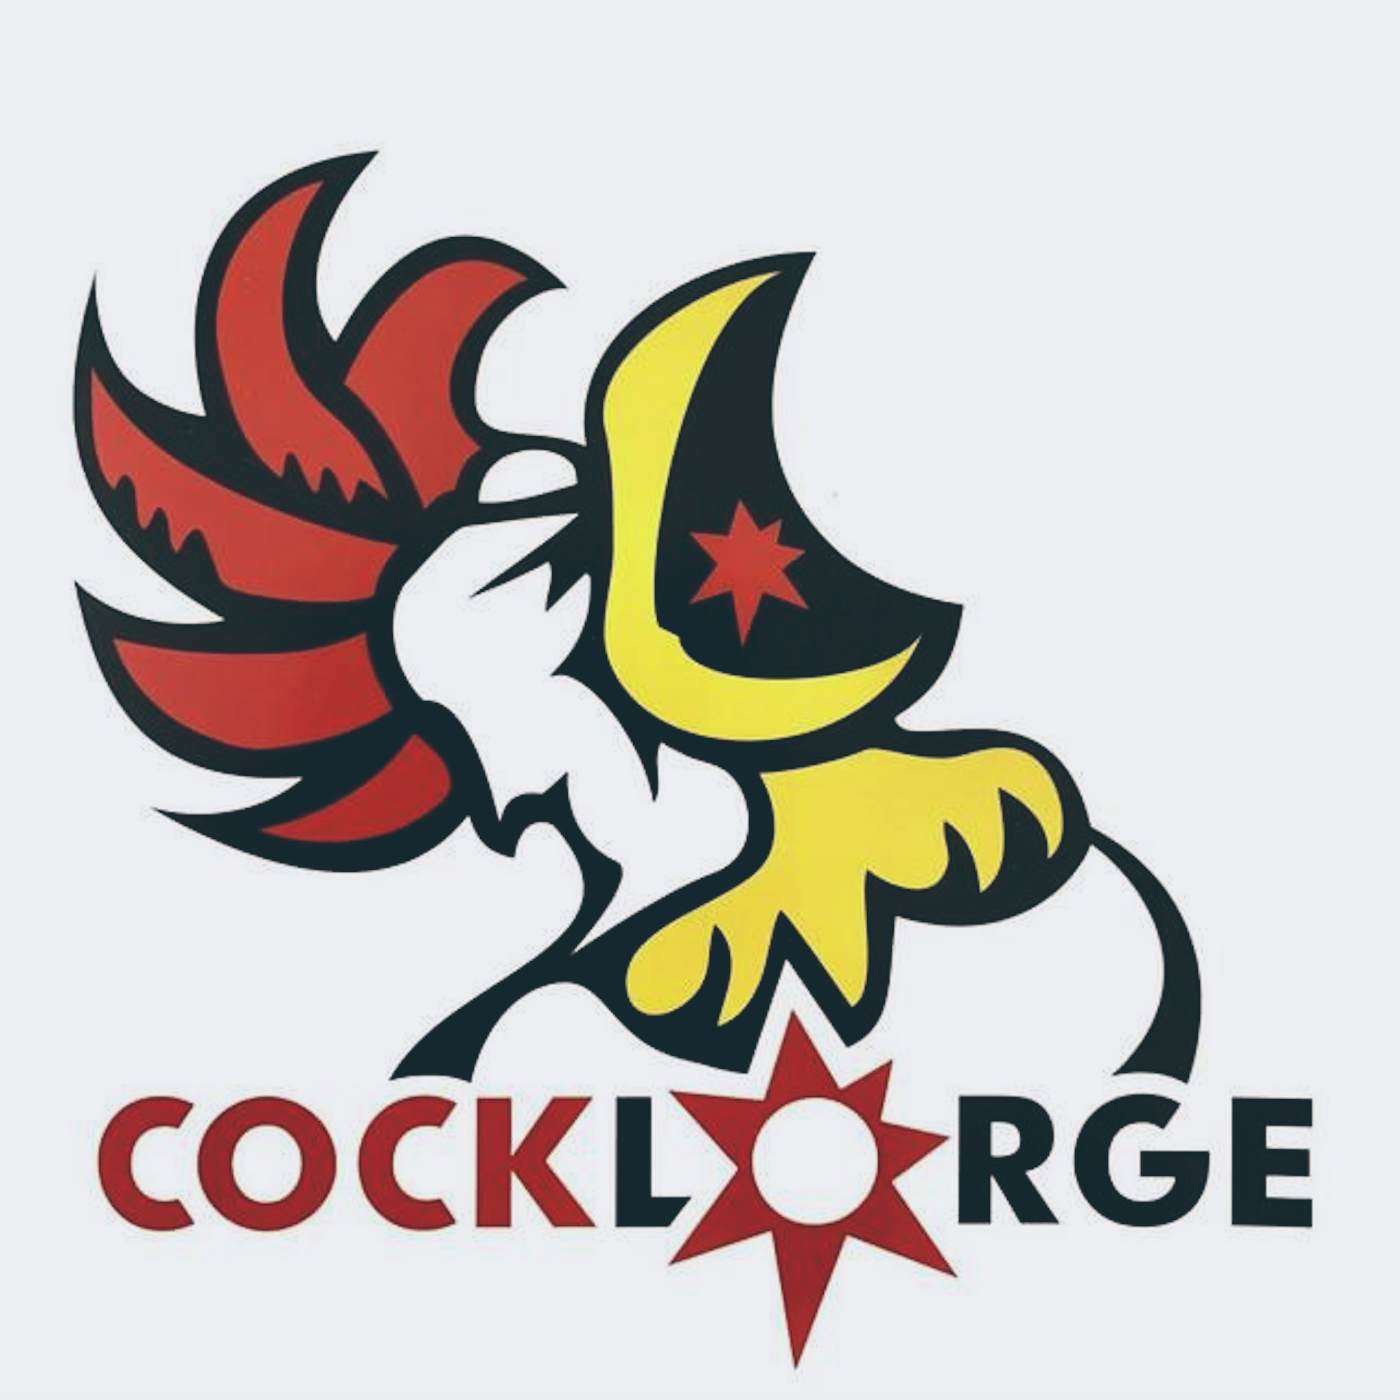 Cock Lorge